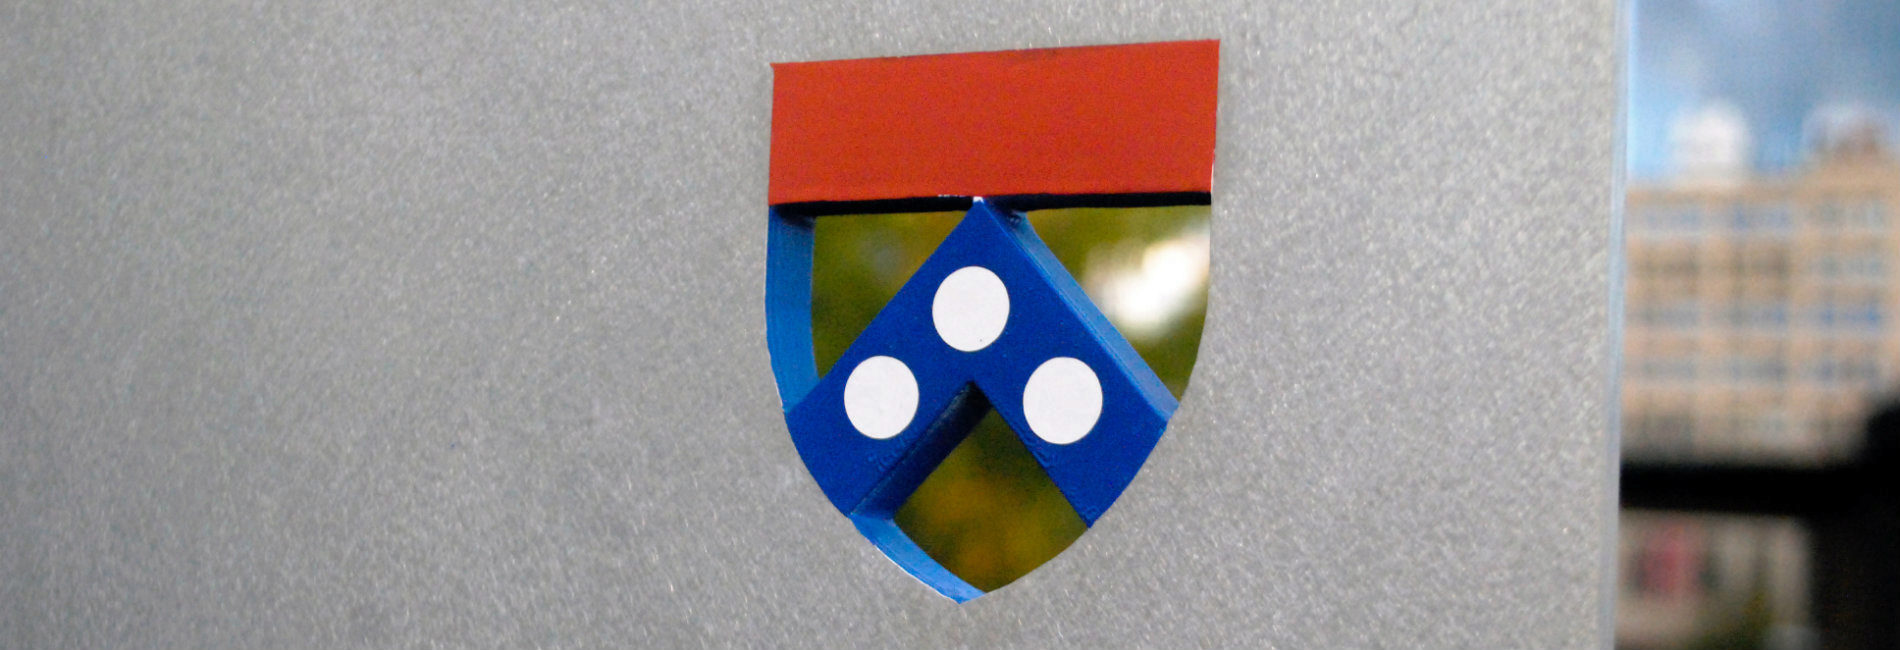 Penn Shield